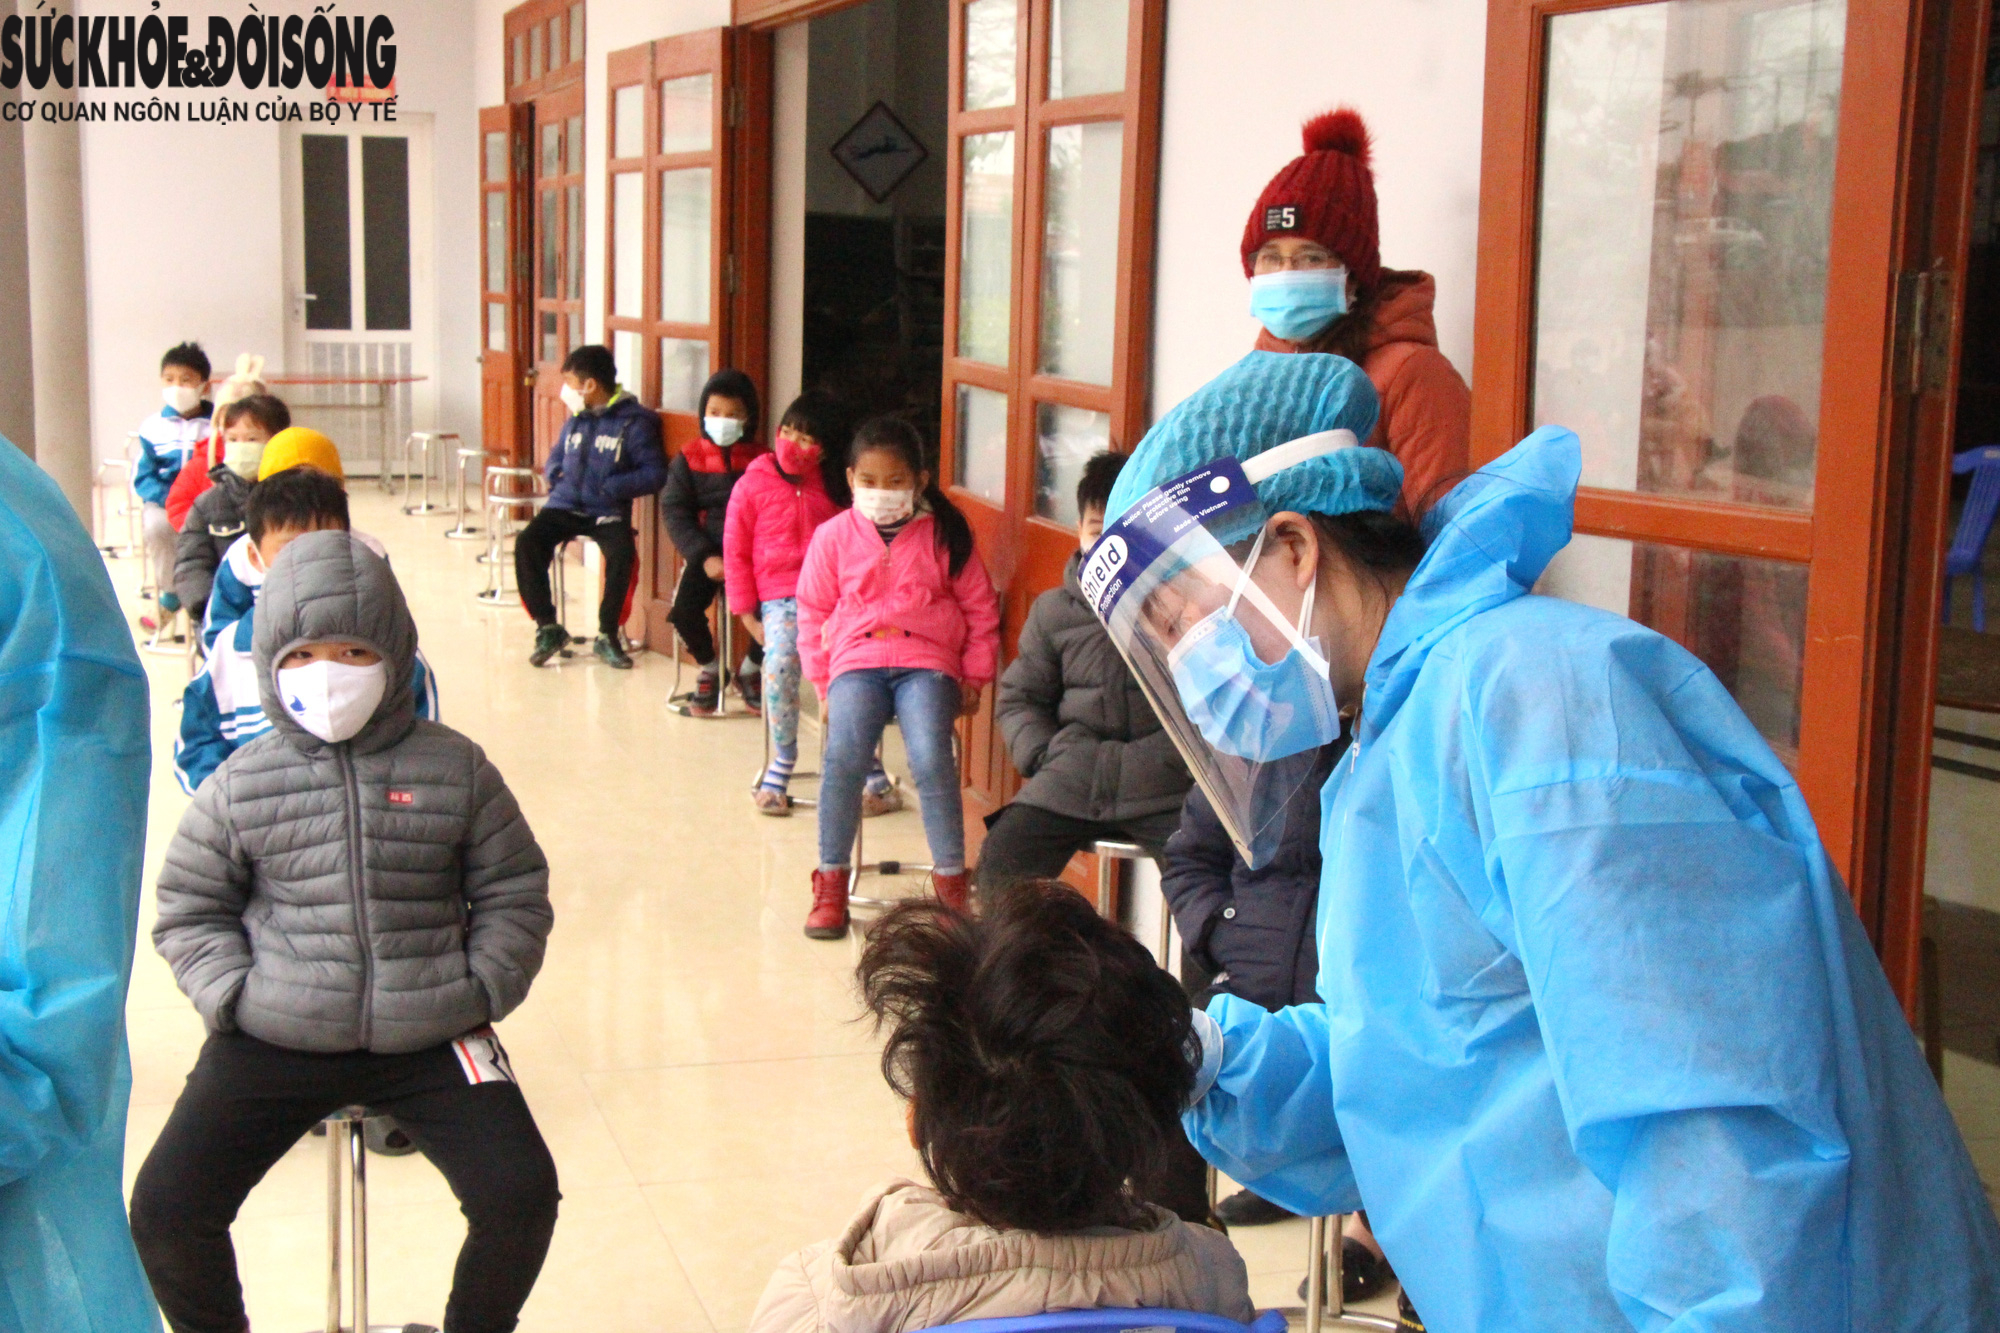 Hải Dương vượt ngưỡng 3.000 ca, một địa phương ở Quảng Ninh cho học sinh dừng đến trường  - Ảnh 1.